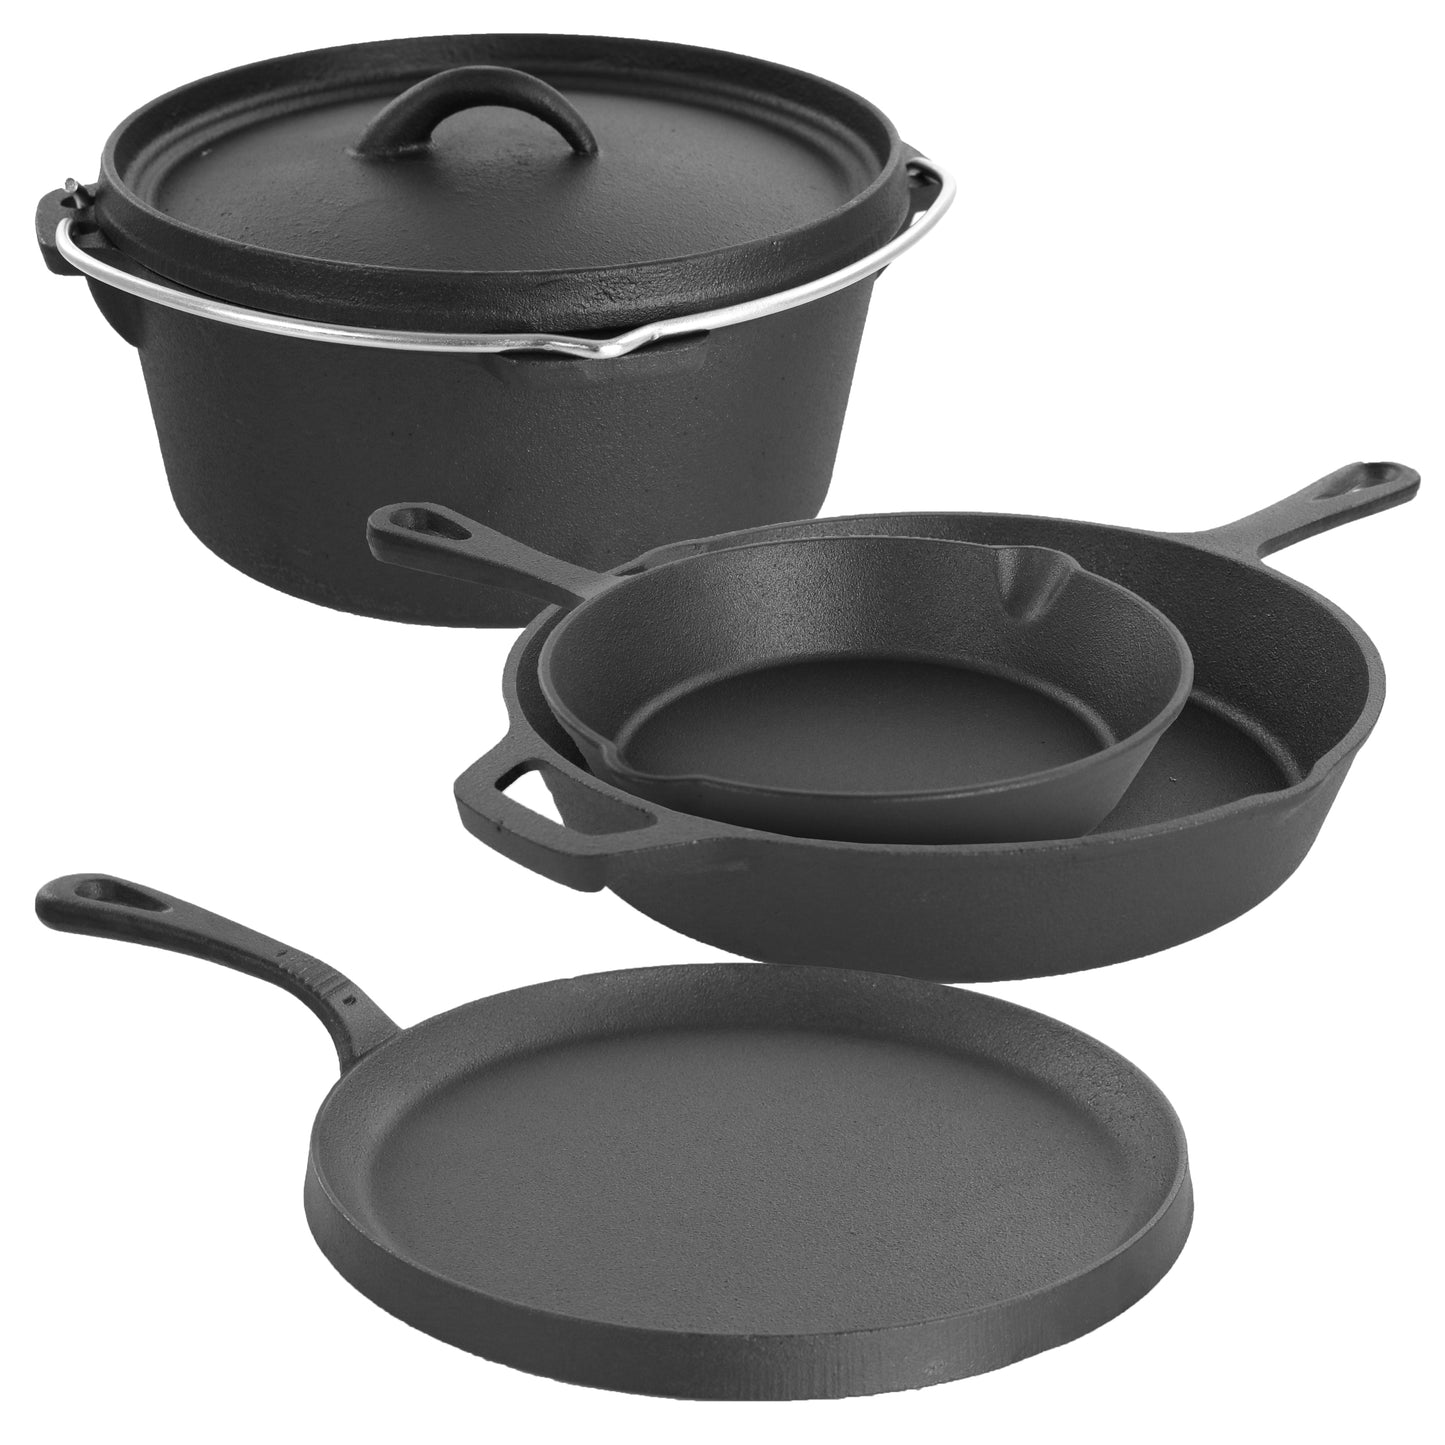 MegaChef MegaChef Pre-Seasoned Cast Iron 5-Piece Kitchen Cookware Set, Pots and Pans